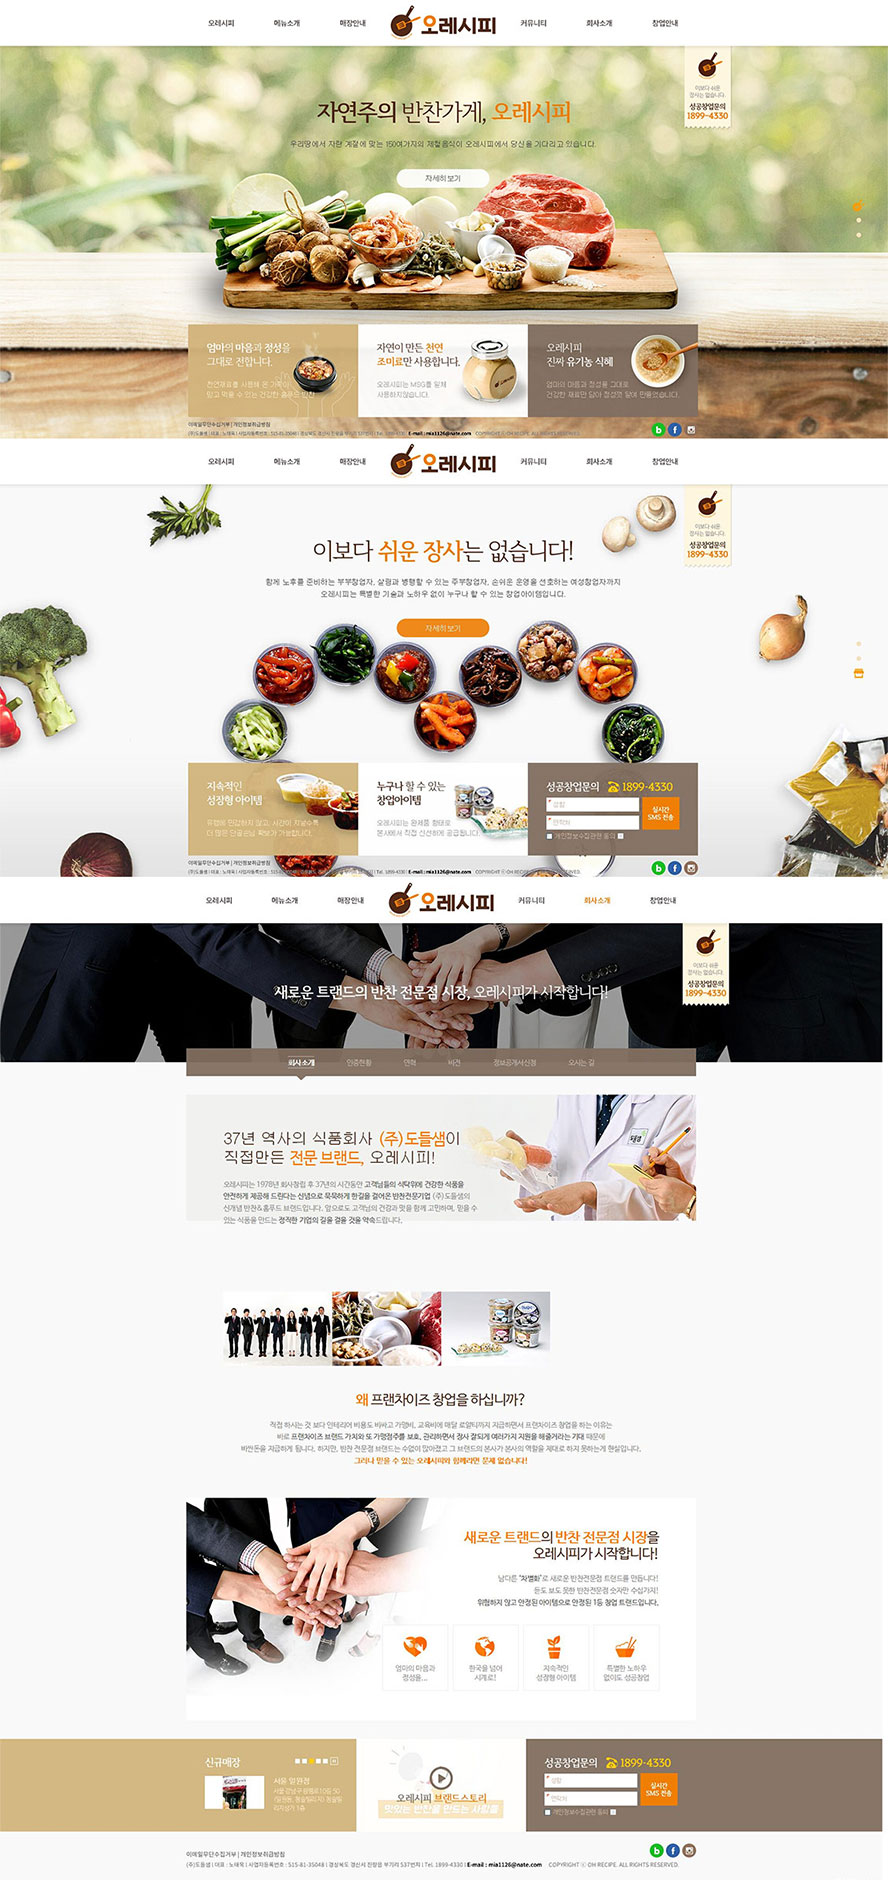 韩国ORECIPE美食网站欣赏